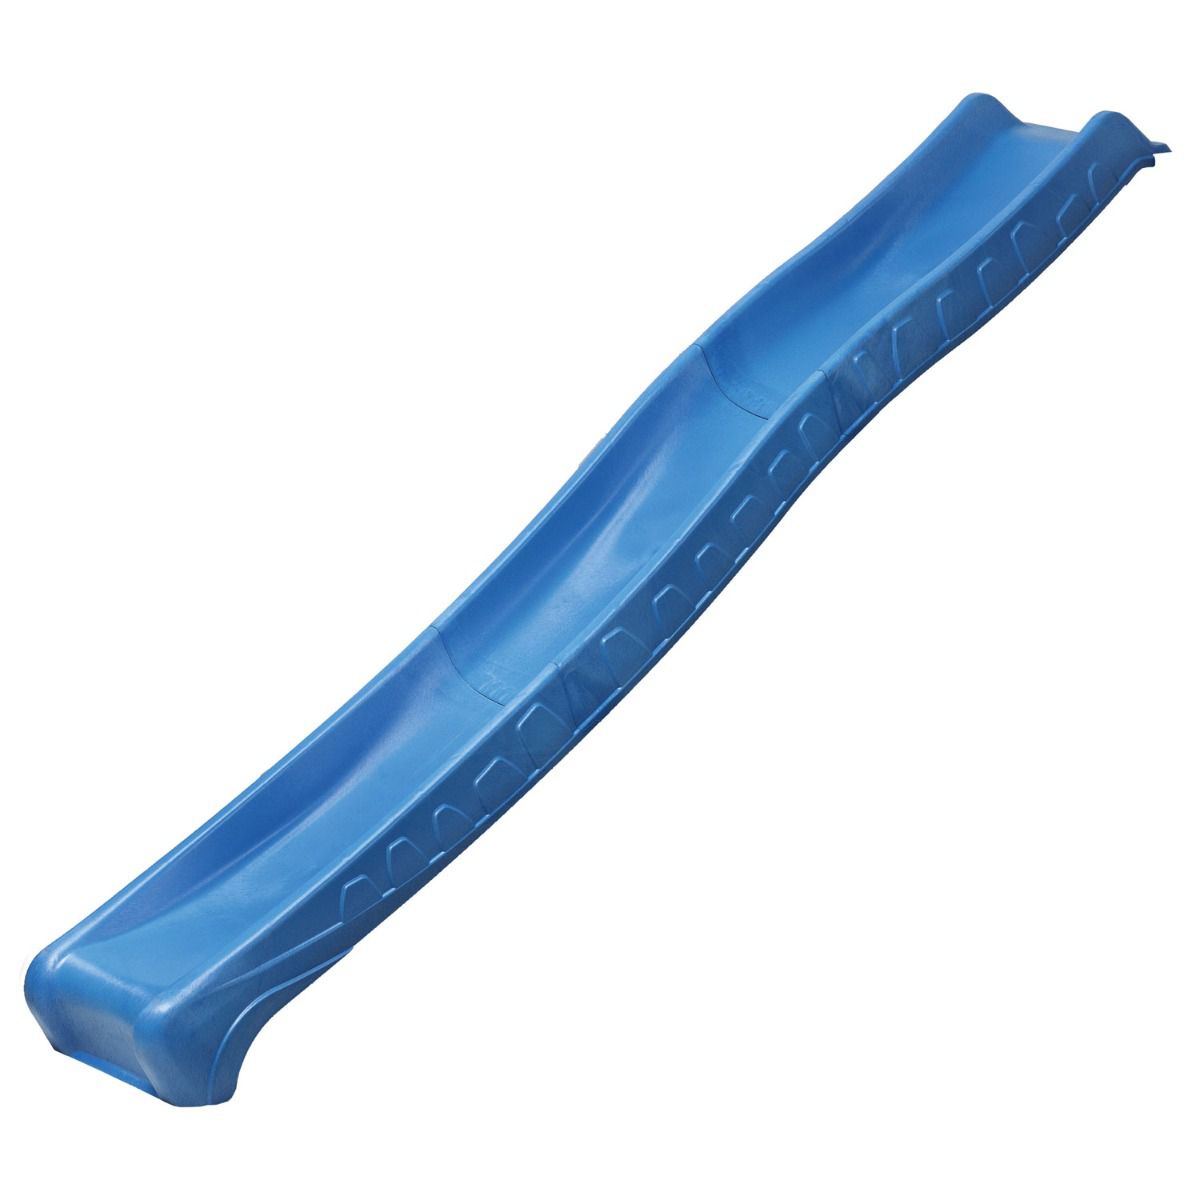 Rutsche mit Wasseranschluss - Länge 2,87 m - Farbe: Blau